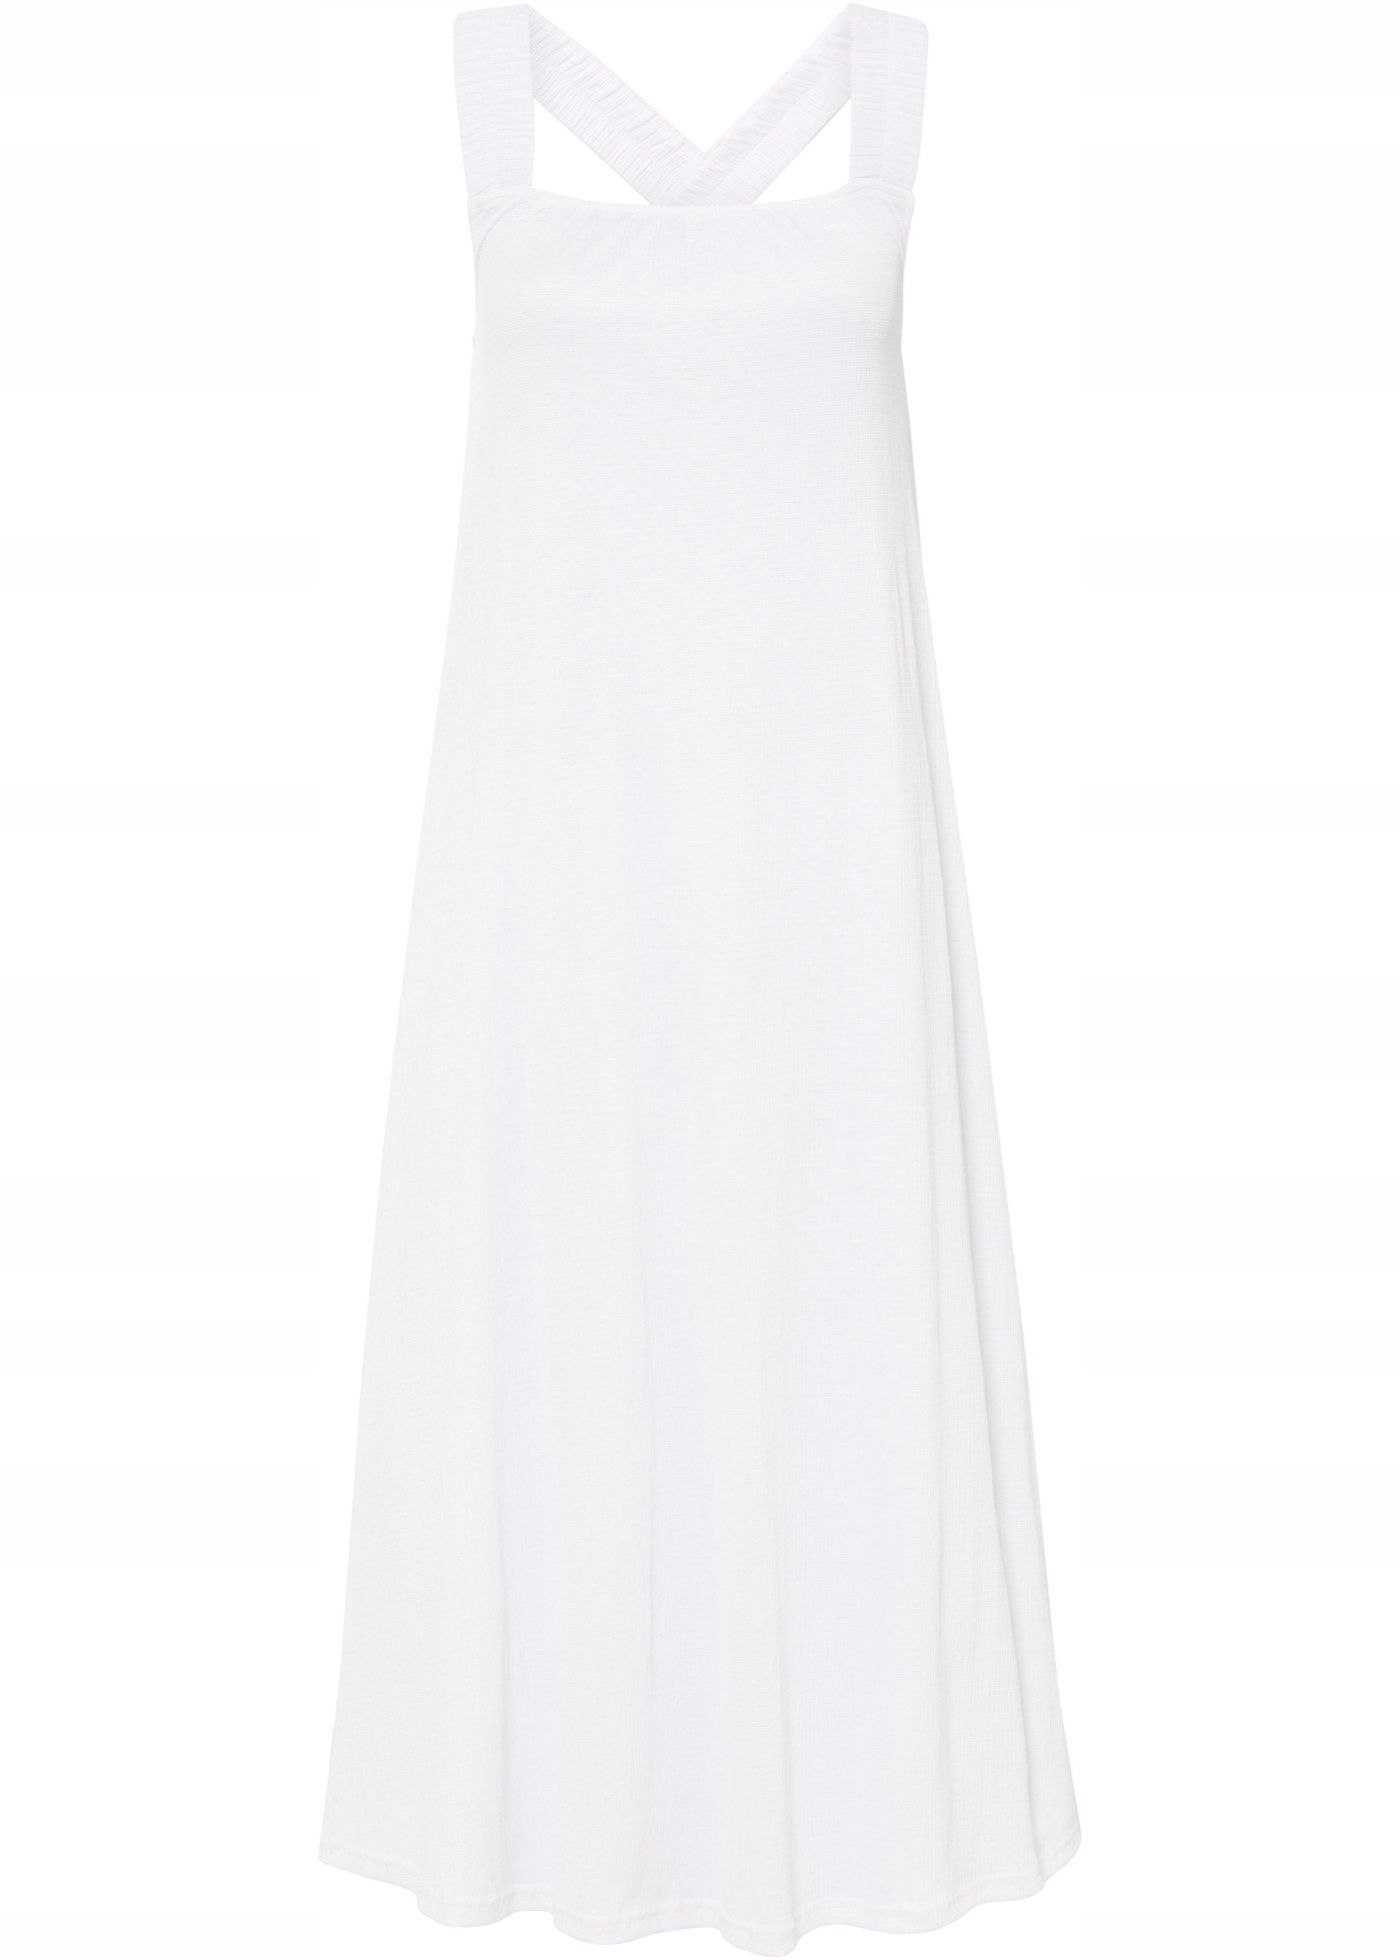 AE2892 sukienka biała letnia z krepy 36/38.